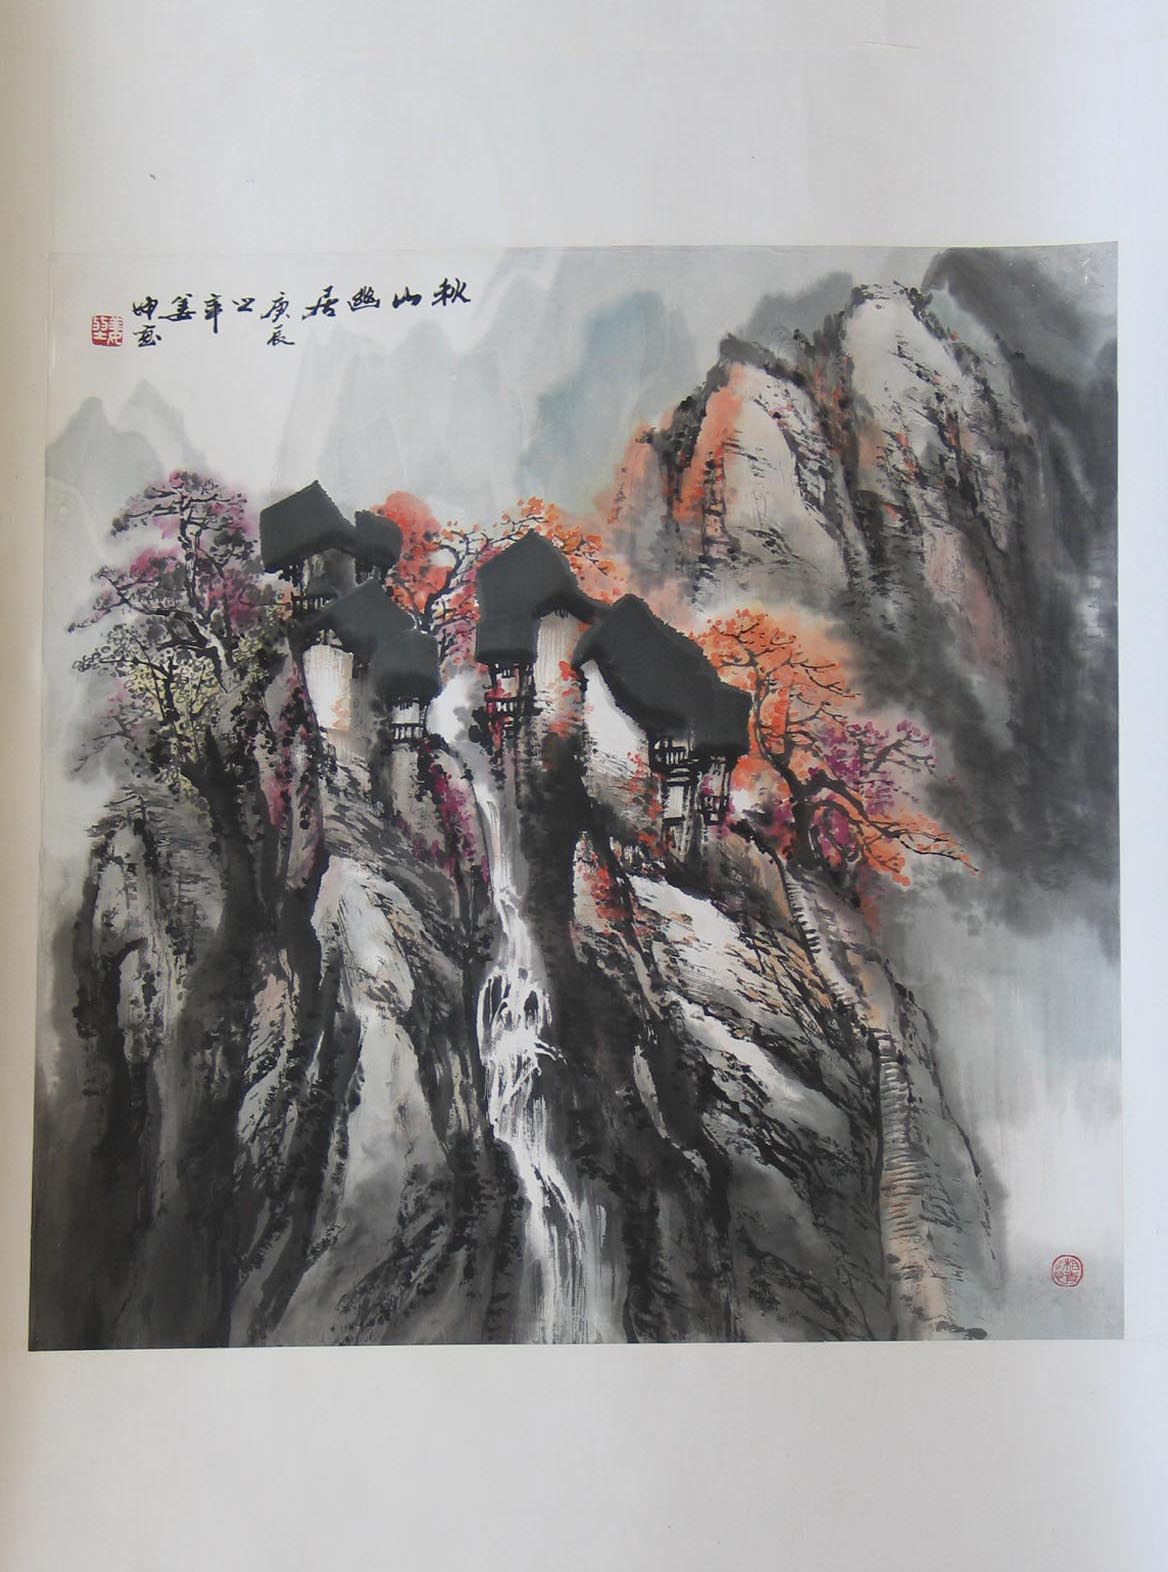   作品名称 姜坤 山水 作品分类 国画 售价 议价 年代 2000 尺寸